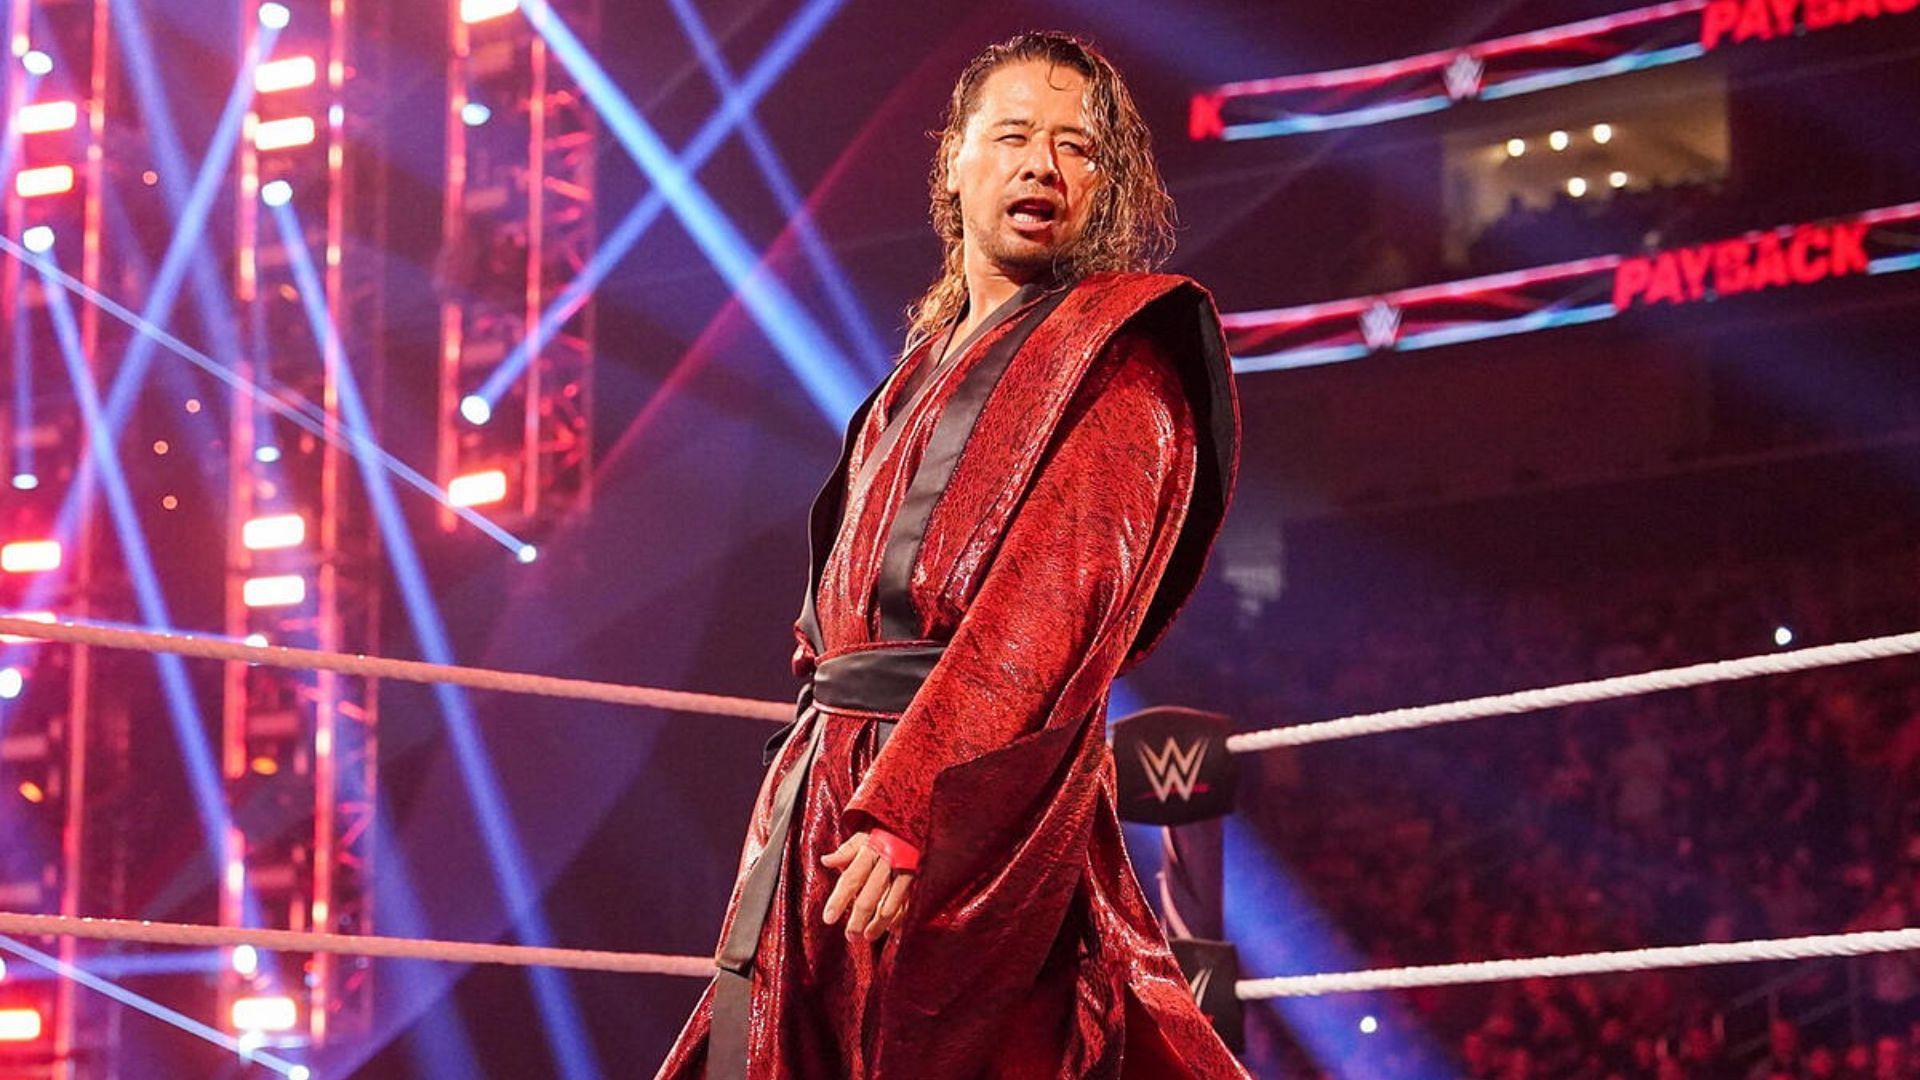 WWE RAW Superstar Shinsuke Nakamura